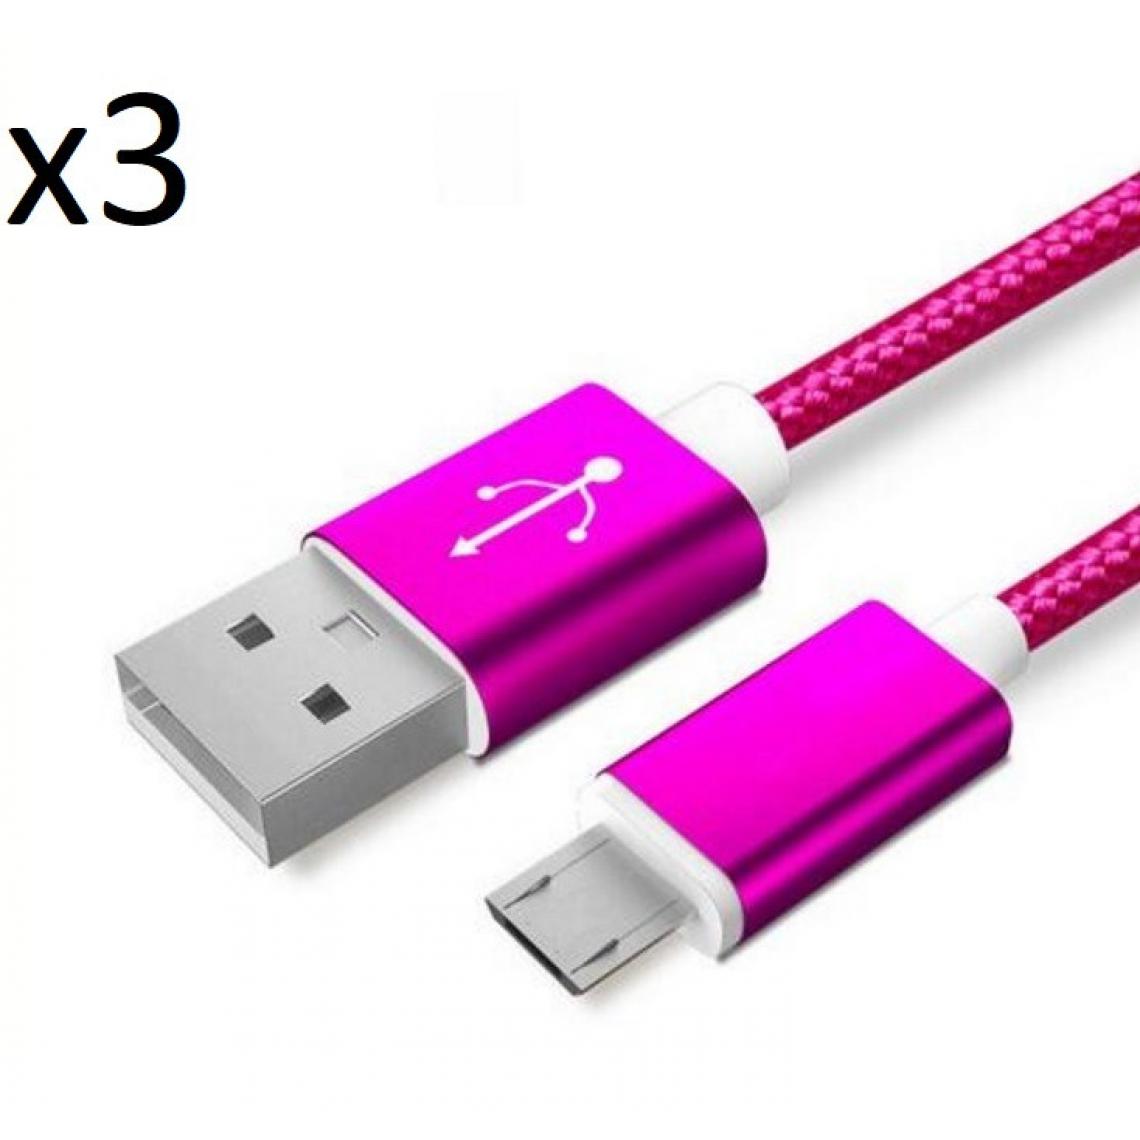 Shot - Pack de 3 Cables Metal Nylon Micro USB pour GIONEE F9 PLUS Smartphone Android Chargeur (ROSE BONBON) - Chargeur secteur téléphone